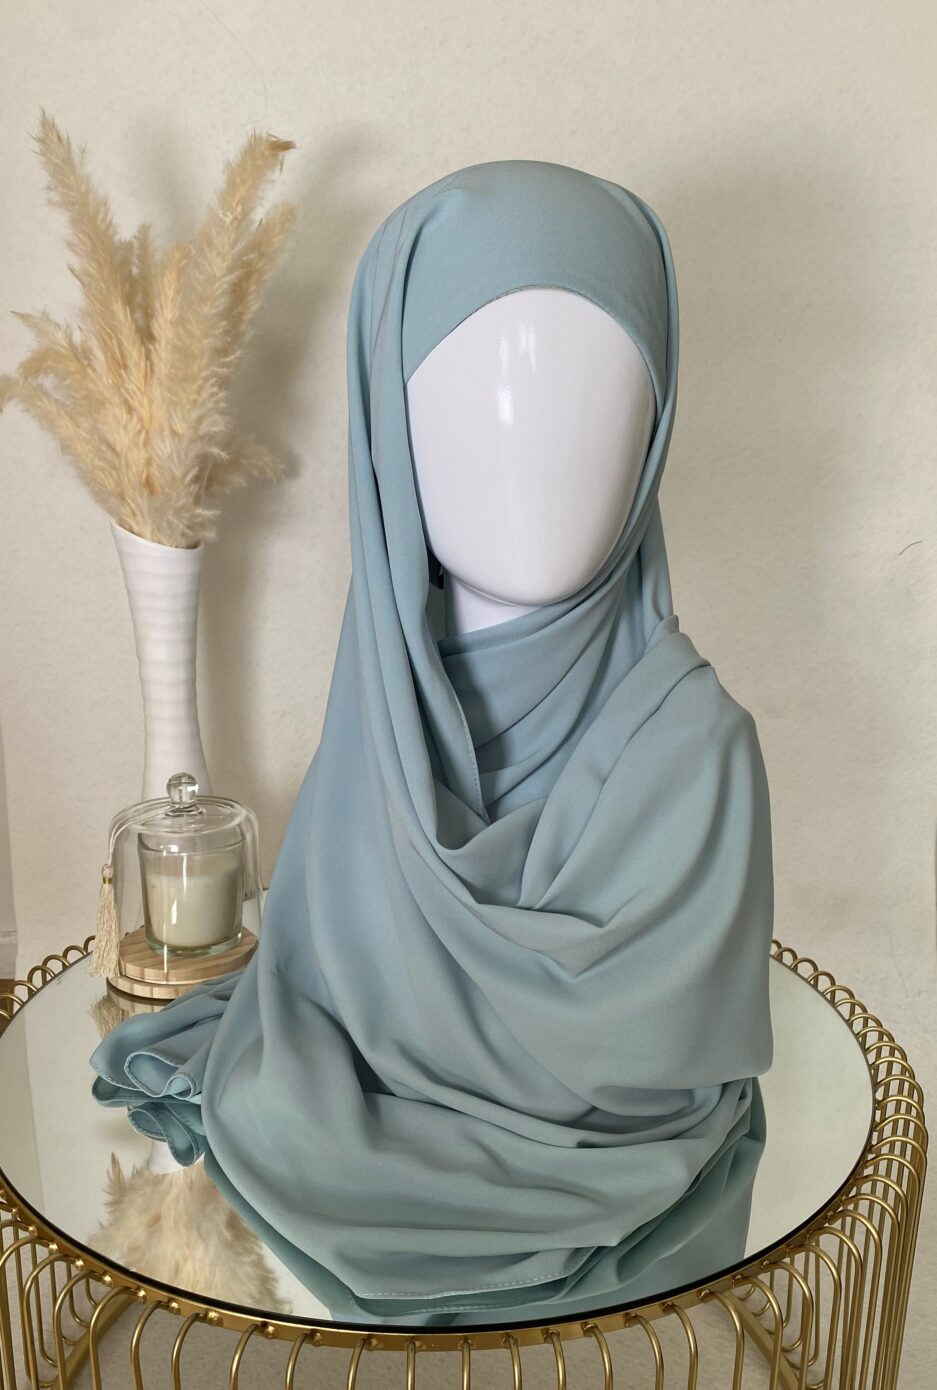 Vente en ligne hijab en soie de médine, en gros et au détail voile soie de médine de bonne qualité 100% opaque, long, livraison rapide en 24H Nouveau hijab en soie de médine, Cendrijab est situé dans le nord de la France